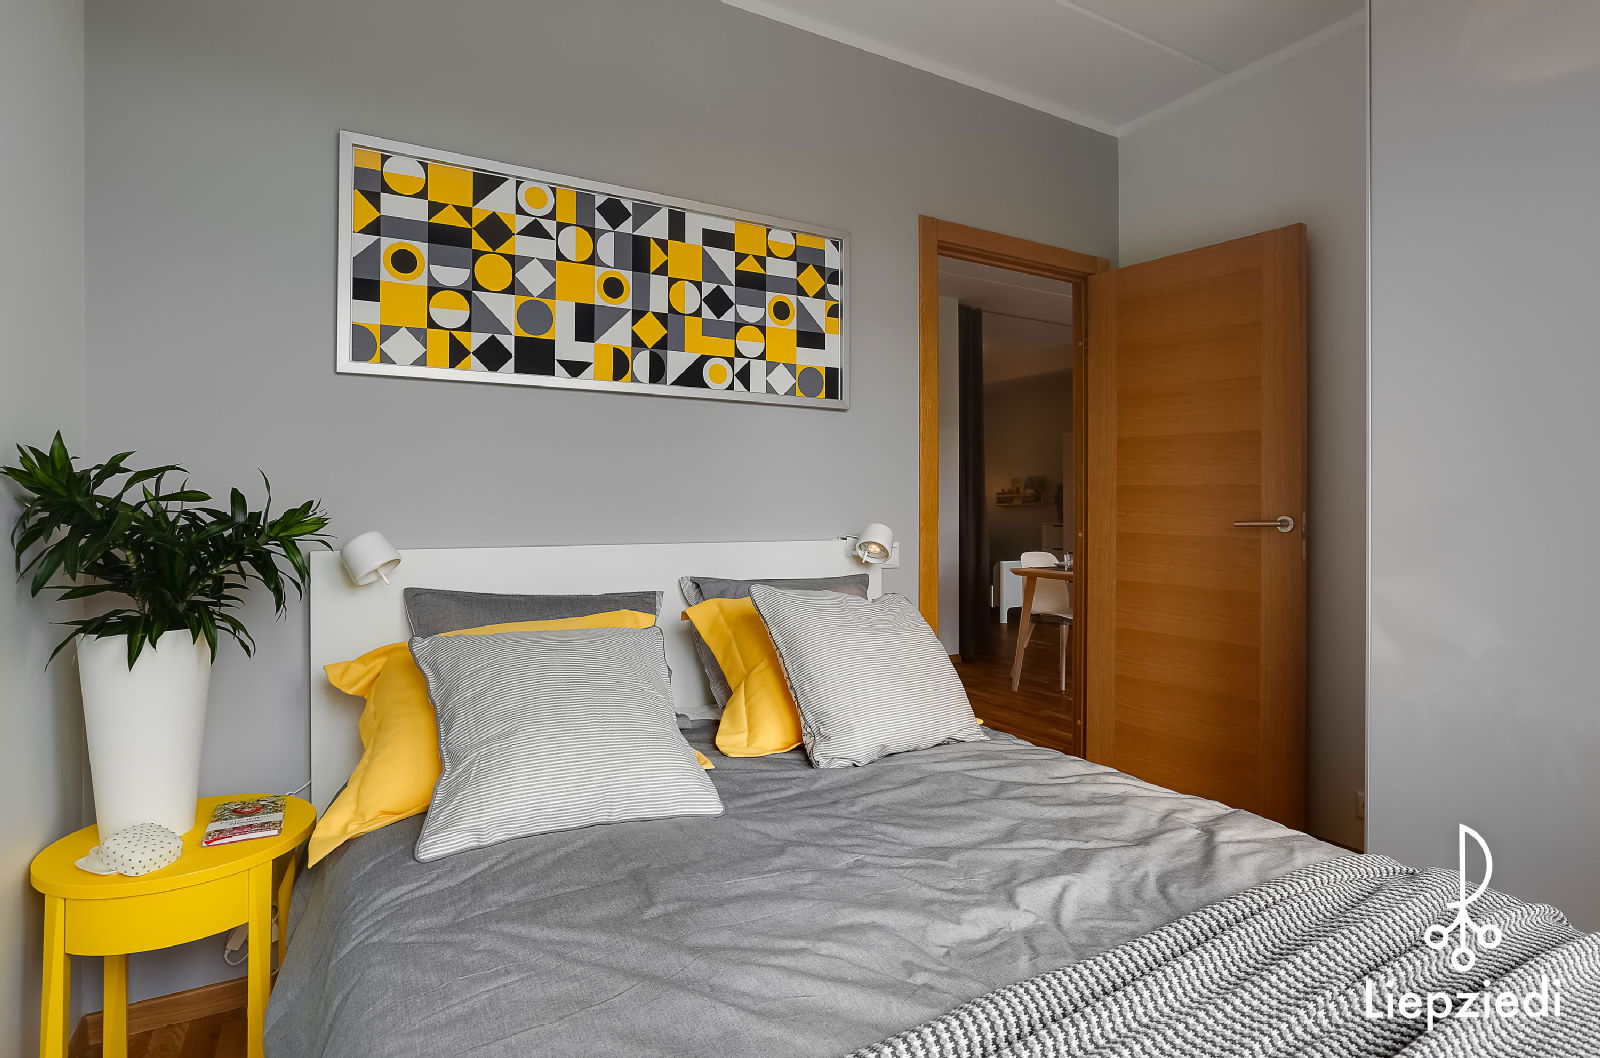 Ērts 3 istabu dzīvokļa iekārtojums par 15 000 eiro! - Nekustamo īpašumu ziņas - City24.lv nekustamo īpašumu sludinājumu portāls